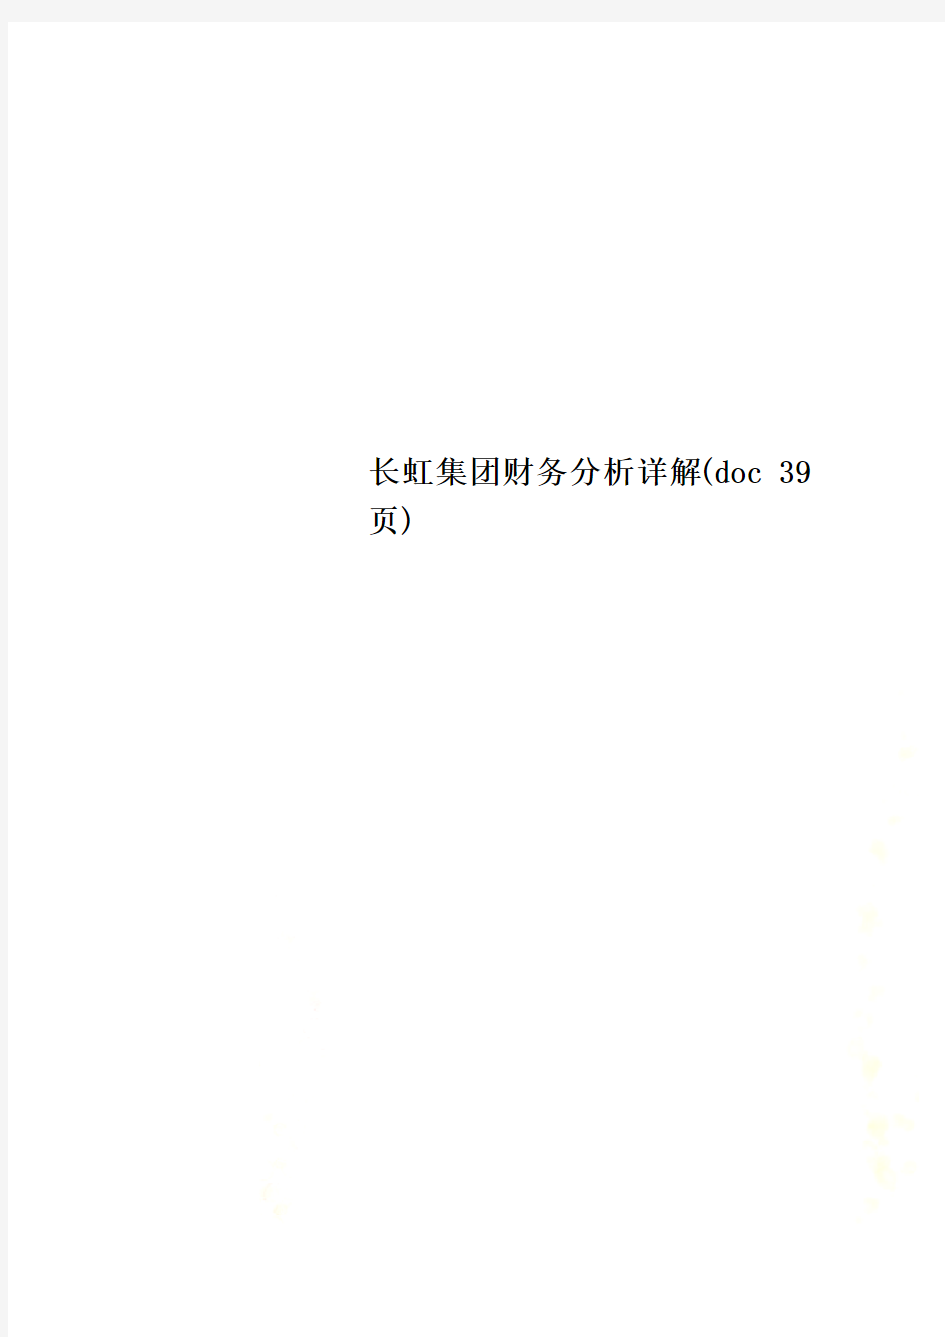 长虹集团财务分析详解(doc 39页)